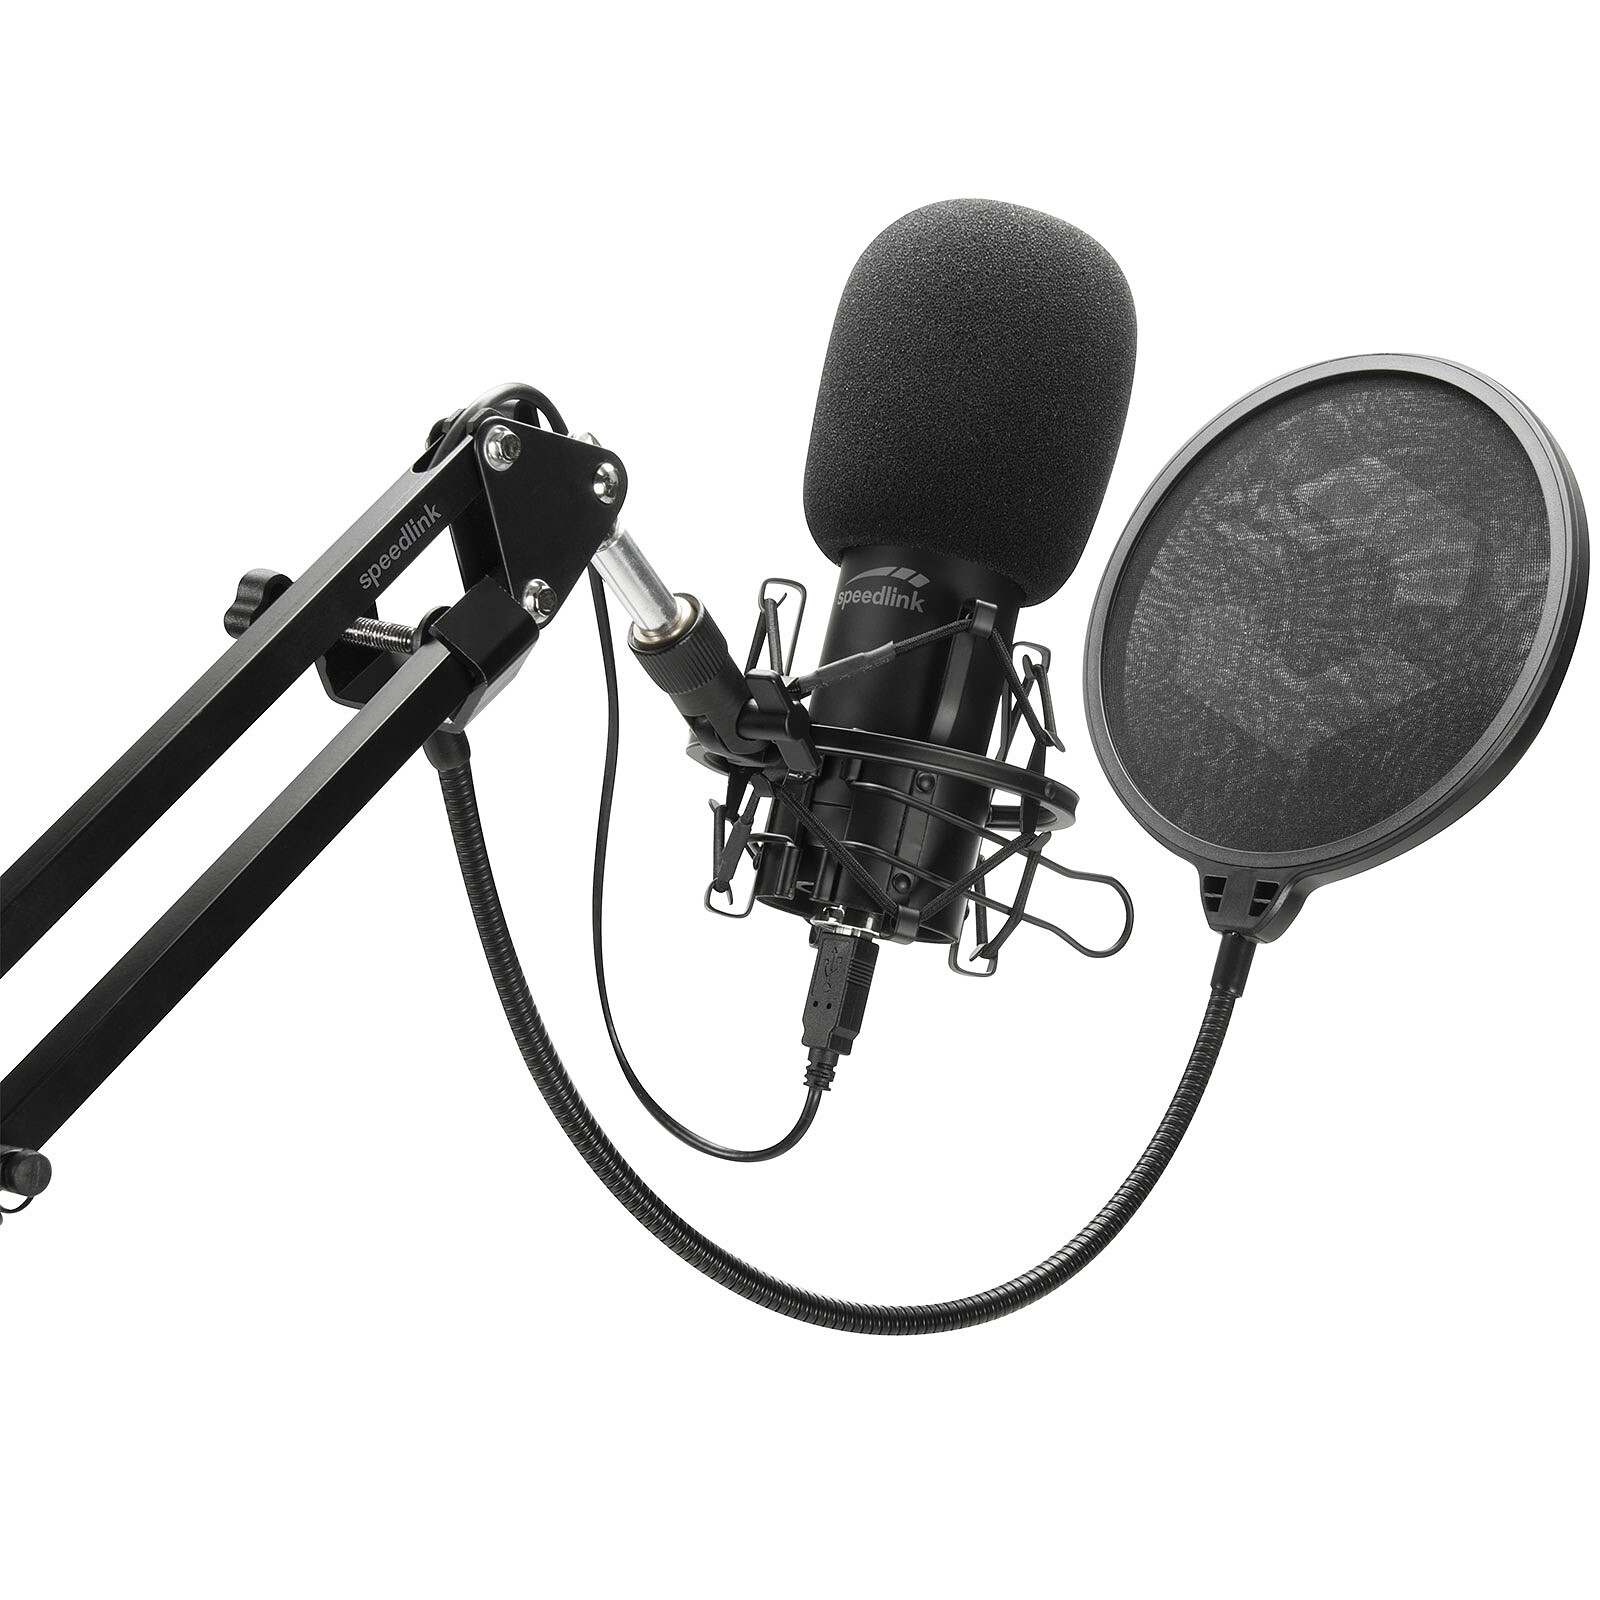 Tige de Microphone Réglable, Réducteur de Bruit, Connecteur Jack 3,5 Mm Speedlink Lucent Microphone de Bureau Flexible